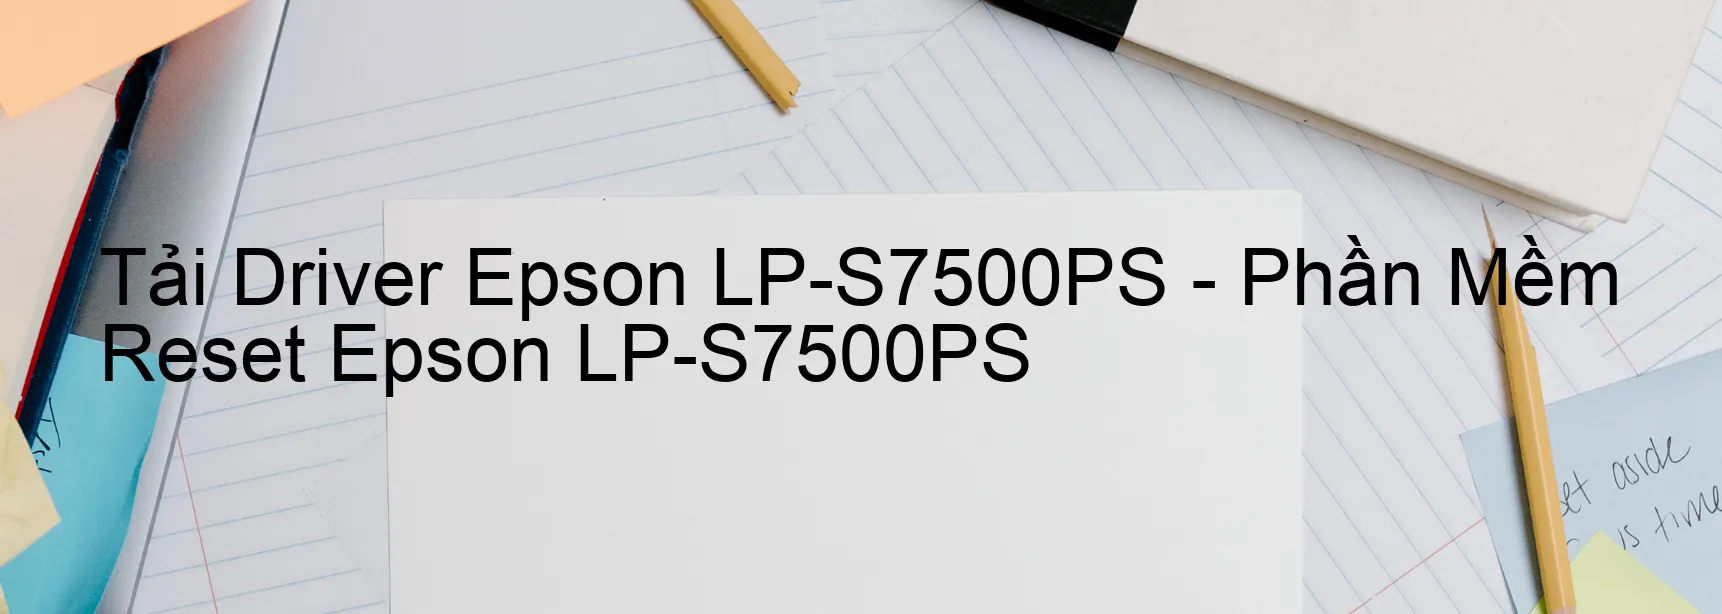 Driver Epson LP-S7500PS, Phần Mềm Reset Epson LP-S7500PS